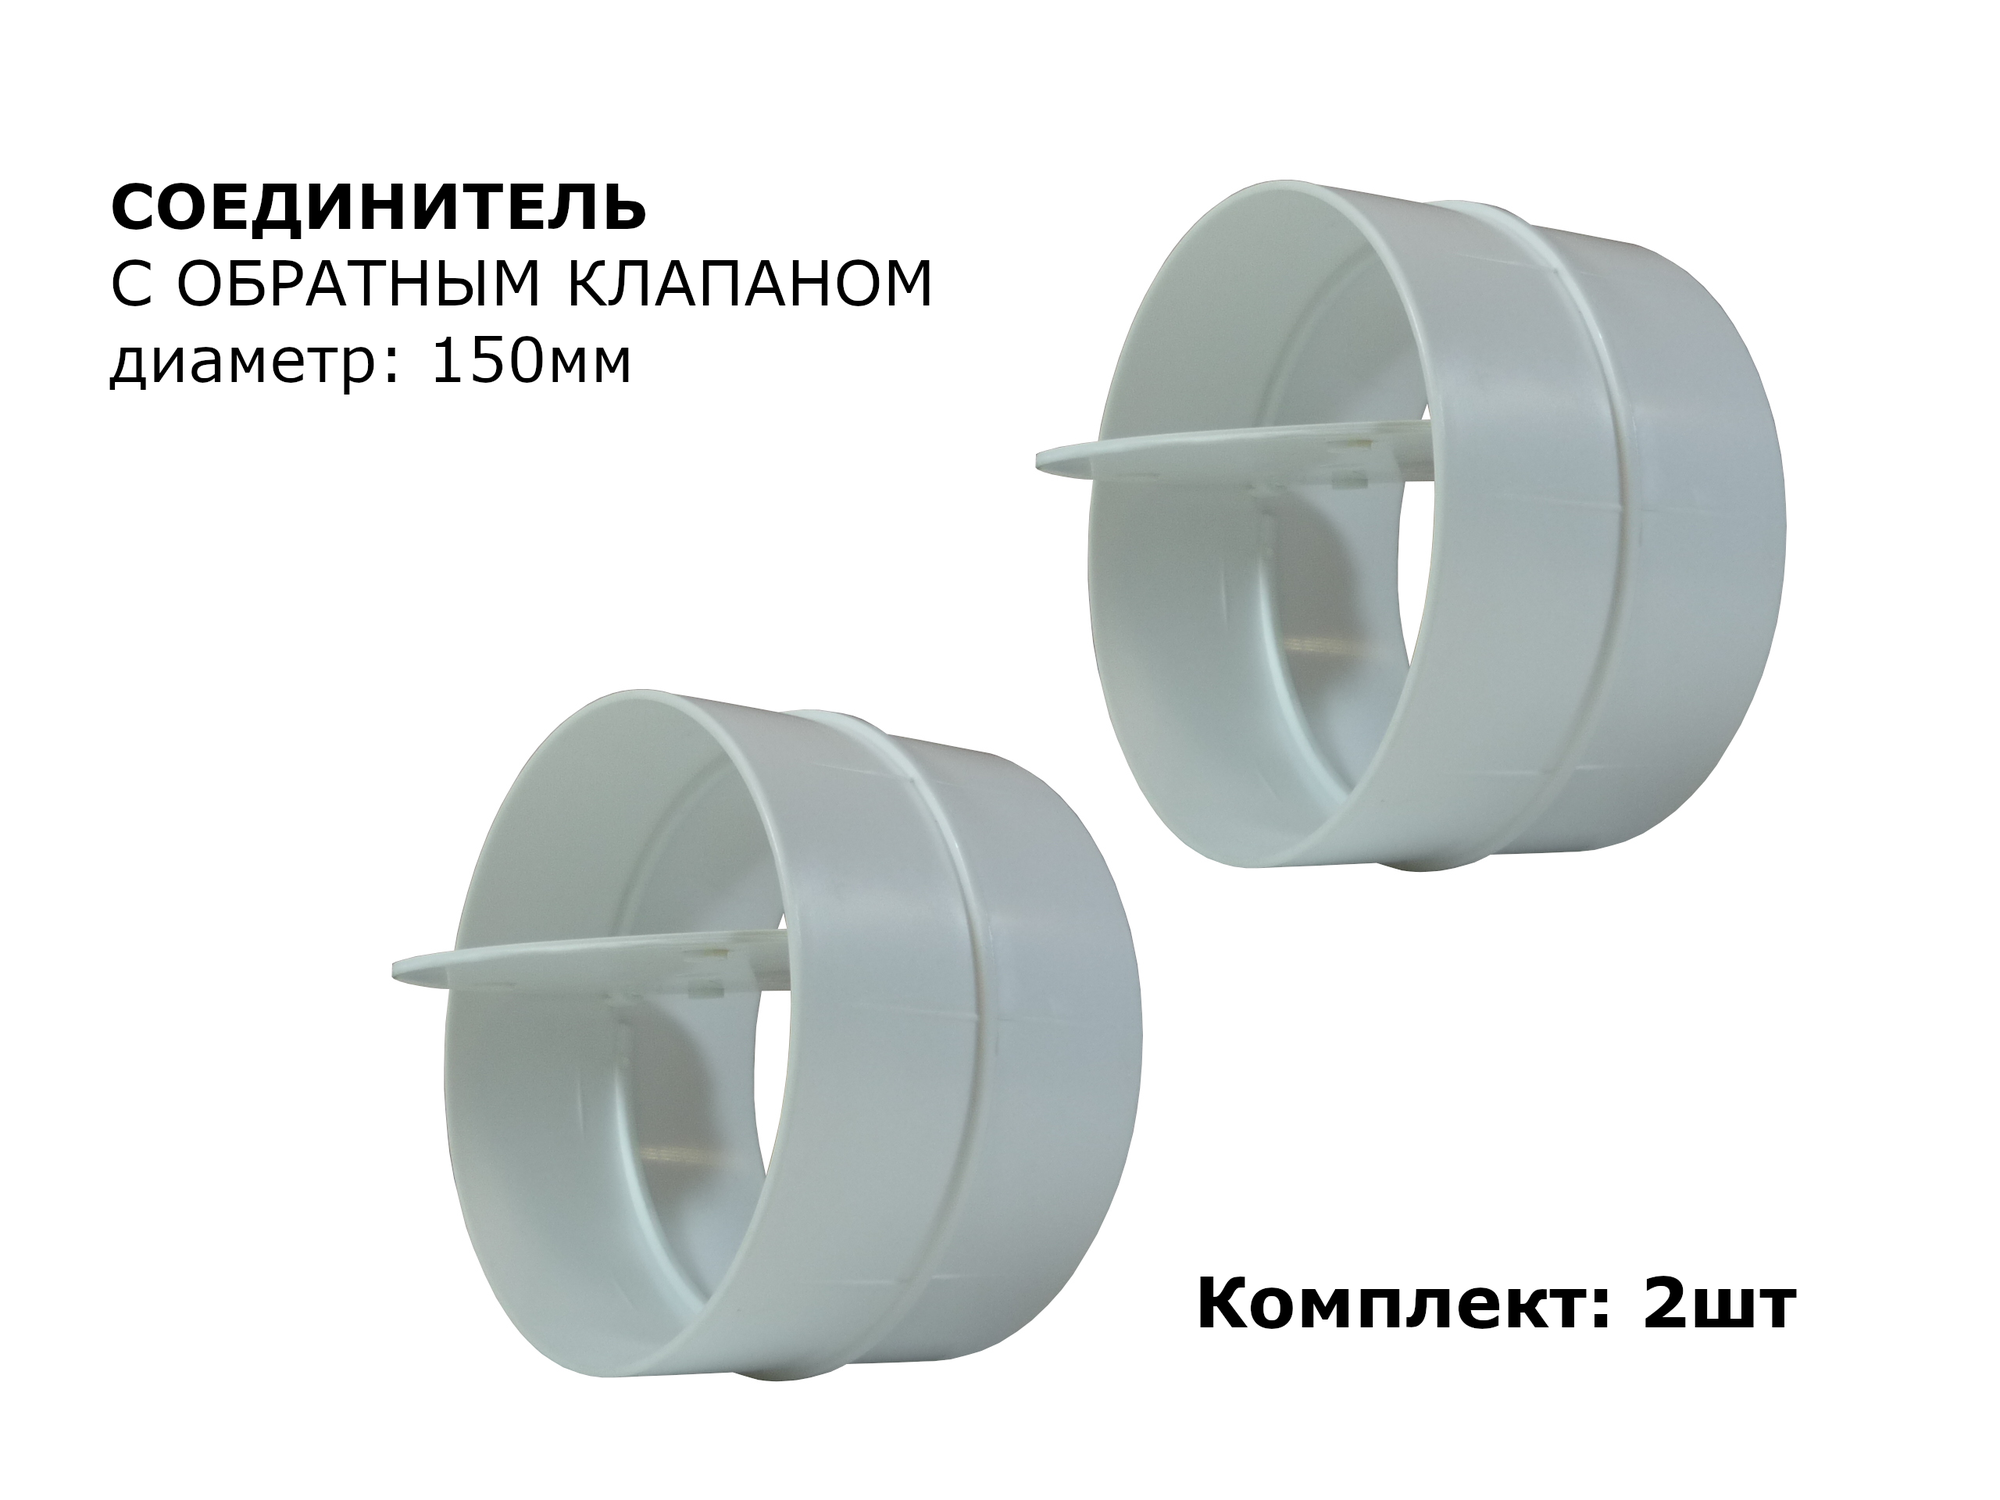 Соединитель круглых воздуховодов с обратным клапаном d150мм, 2шт, белый